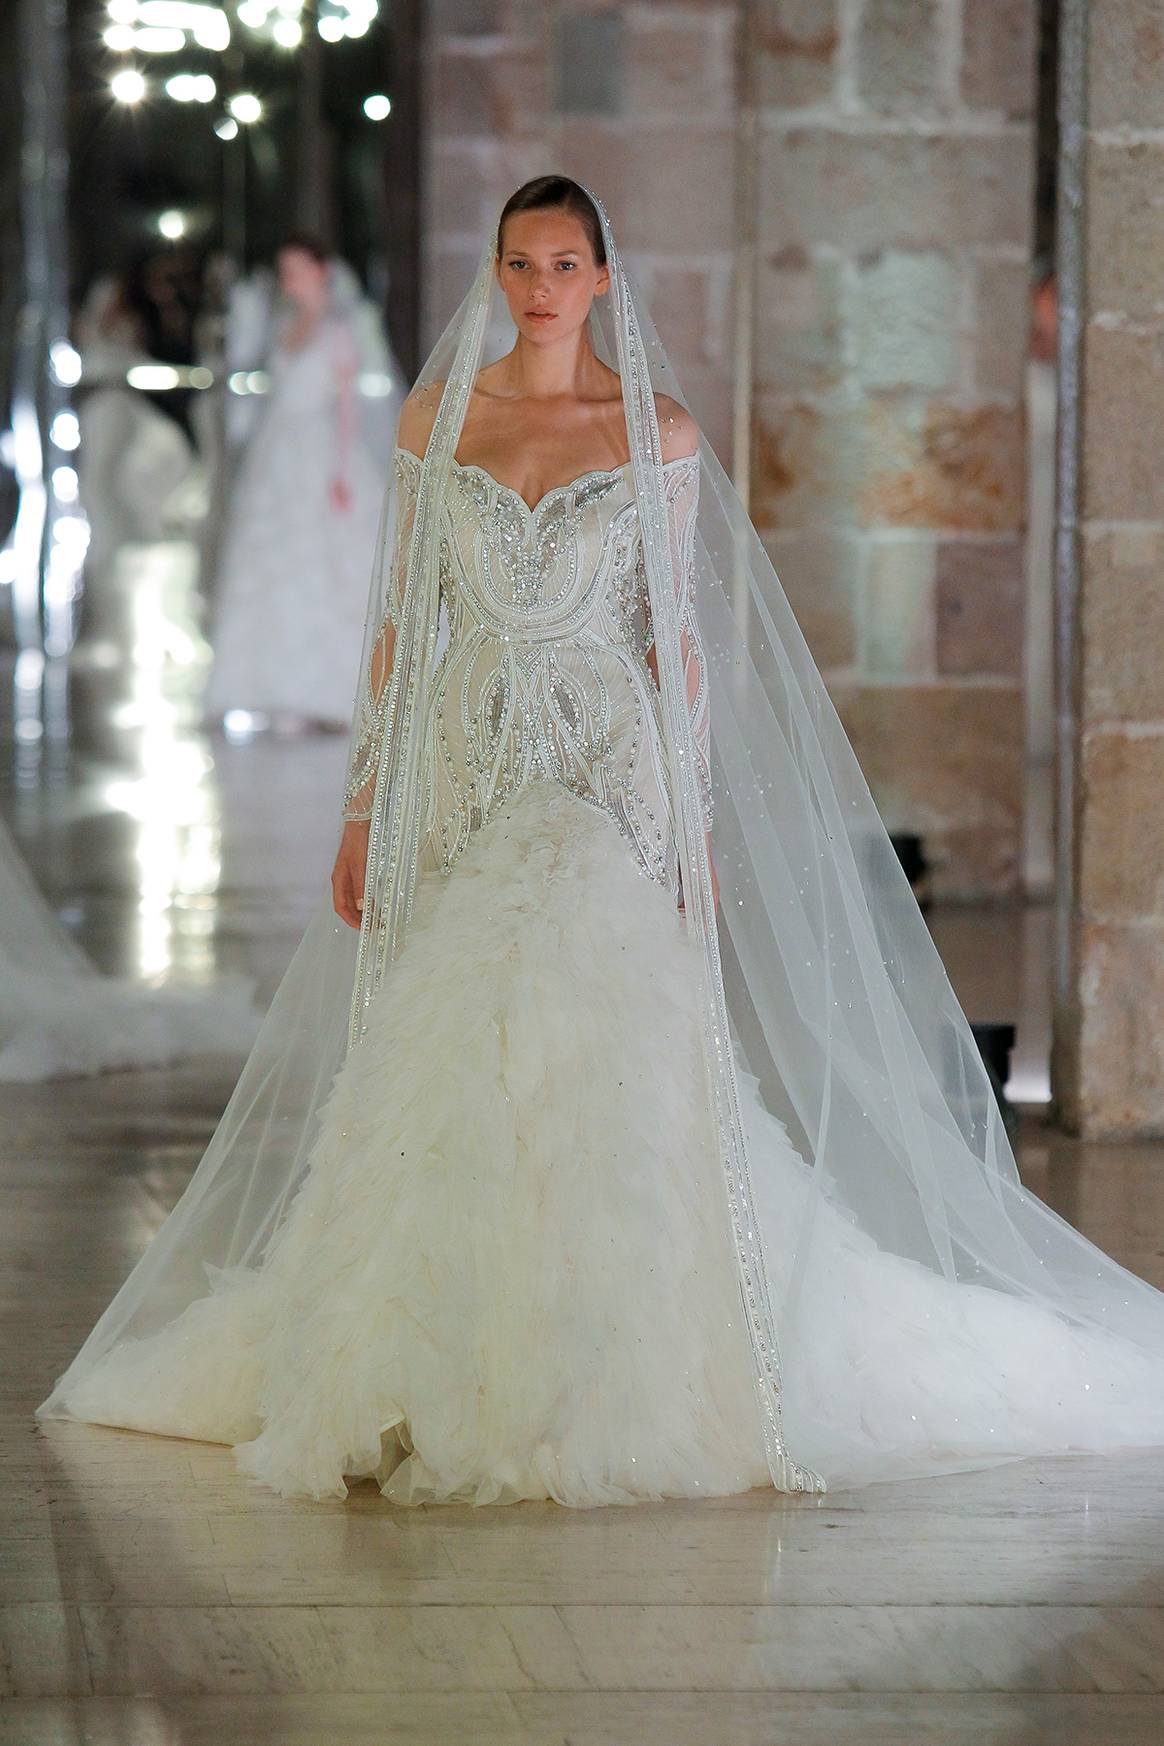 Photo Credits: Desfile de la colección de moda nupcial de Elie Saab “A Sense of Wonder” durante la “Bridal Night” de la Barcelona Bridal Fashion Week. Fotografía de cortesía.